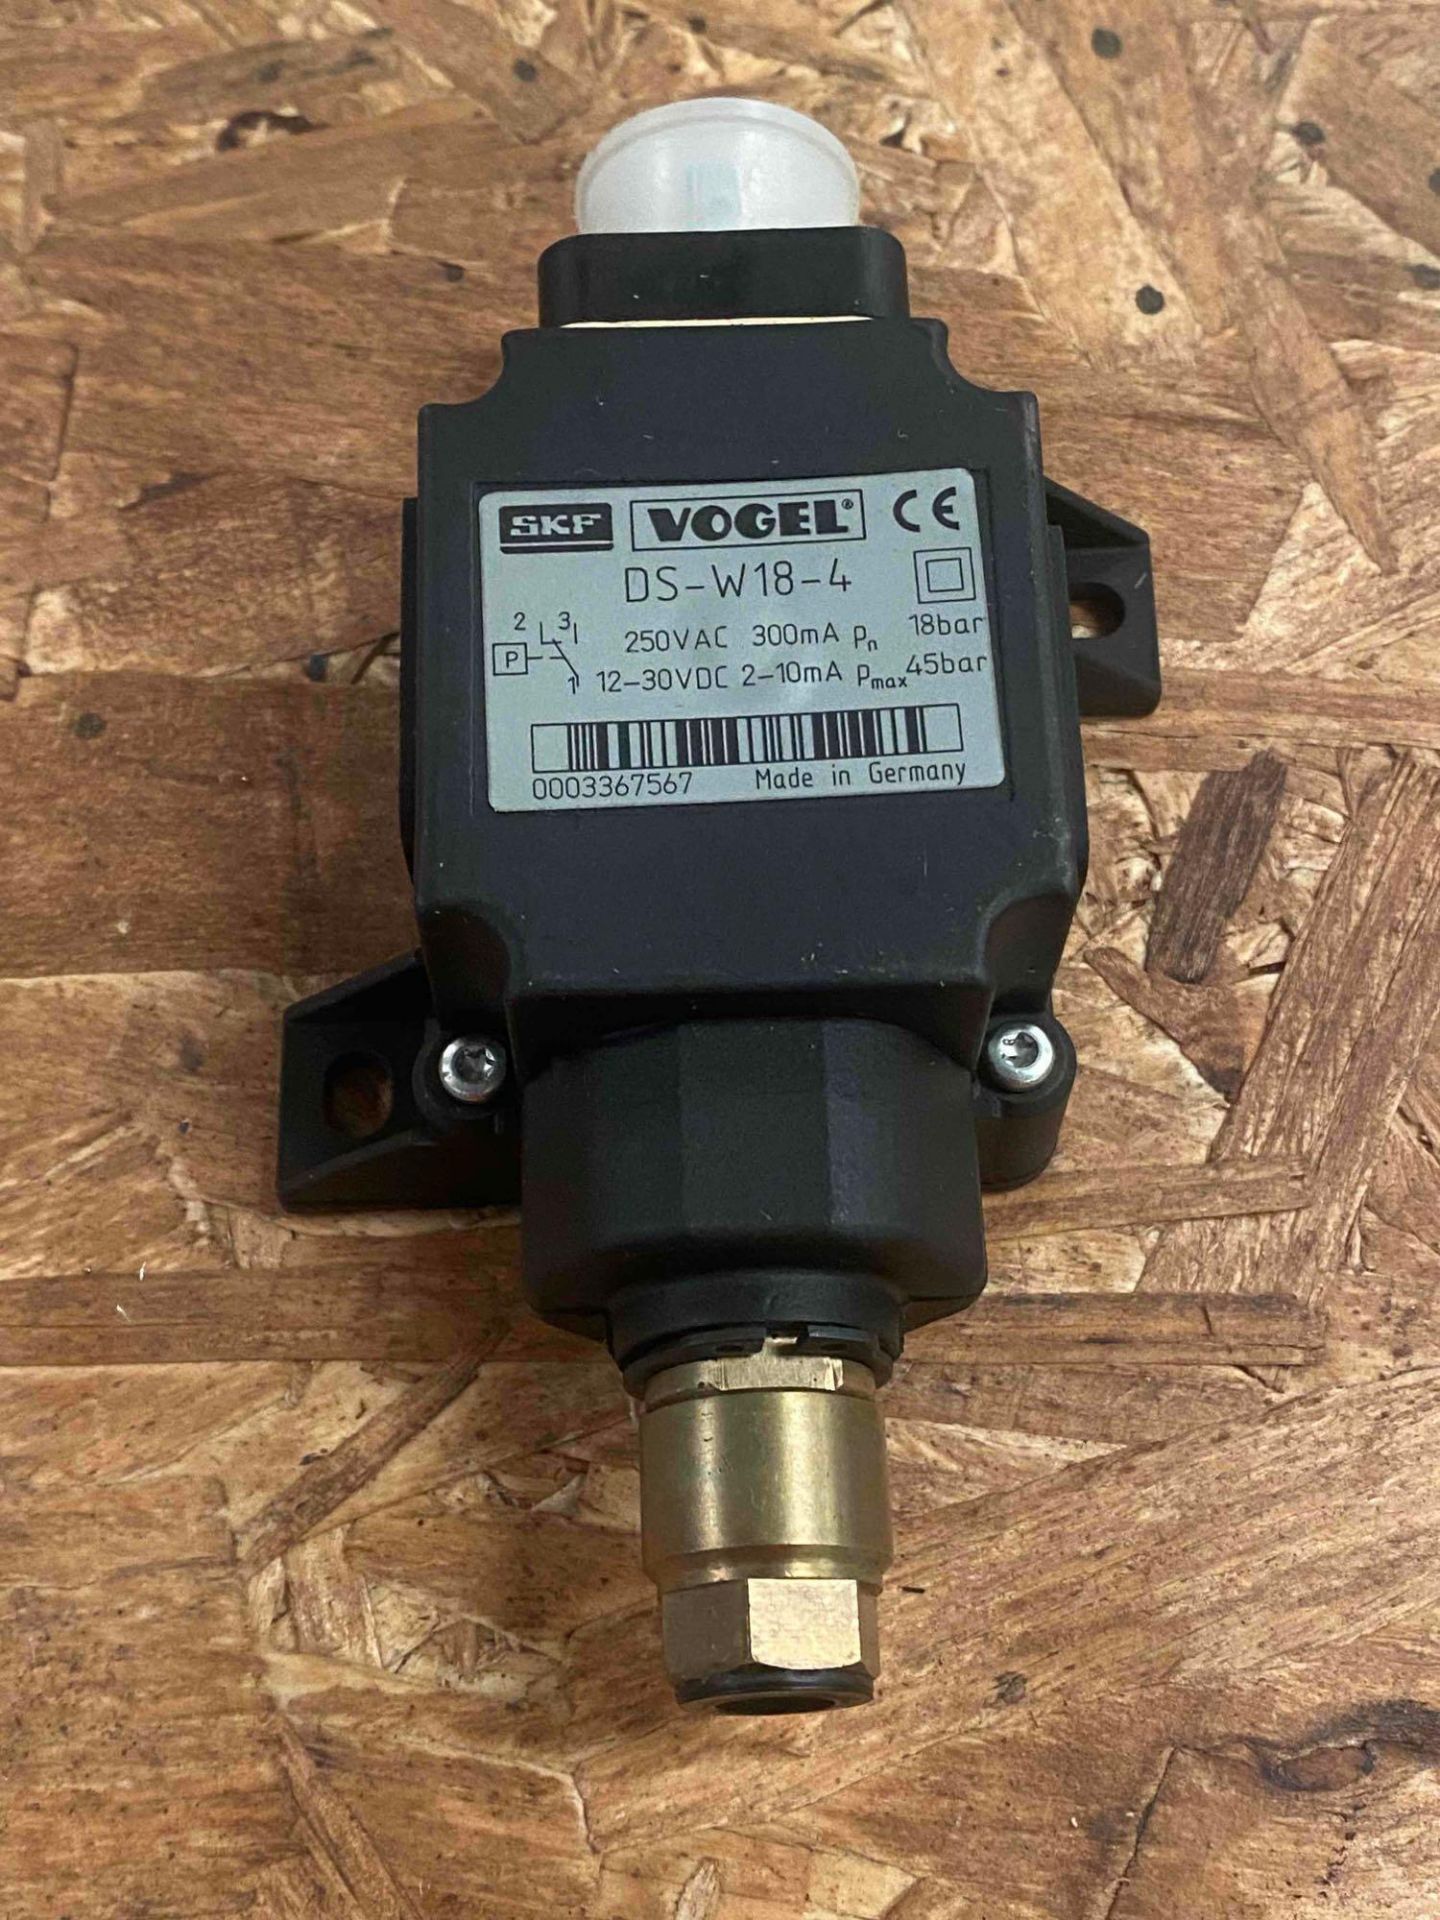 Vogel SFK Pressure Switch